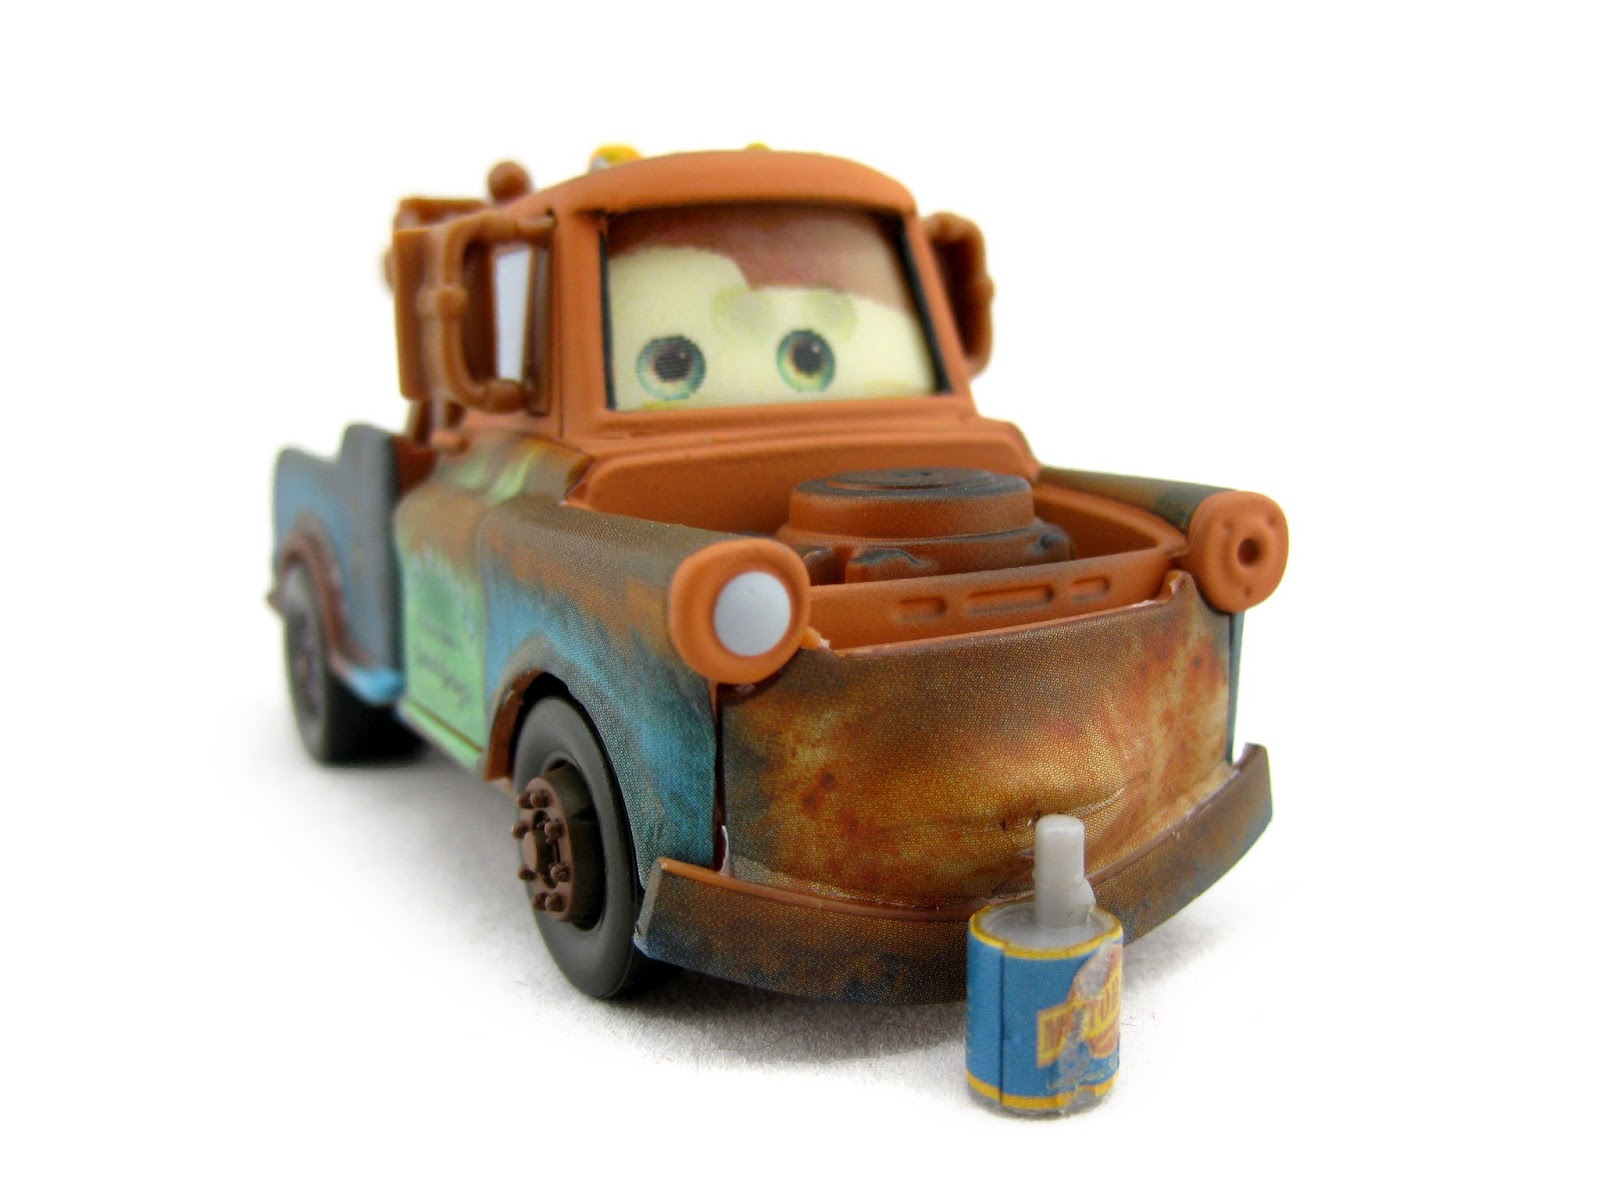 Disney Pixar Cars 3 Mater Diecast Mattel 1:55 2018 Radiator Springs Brown Mater 